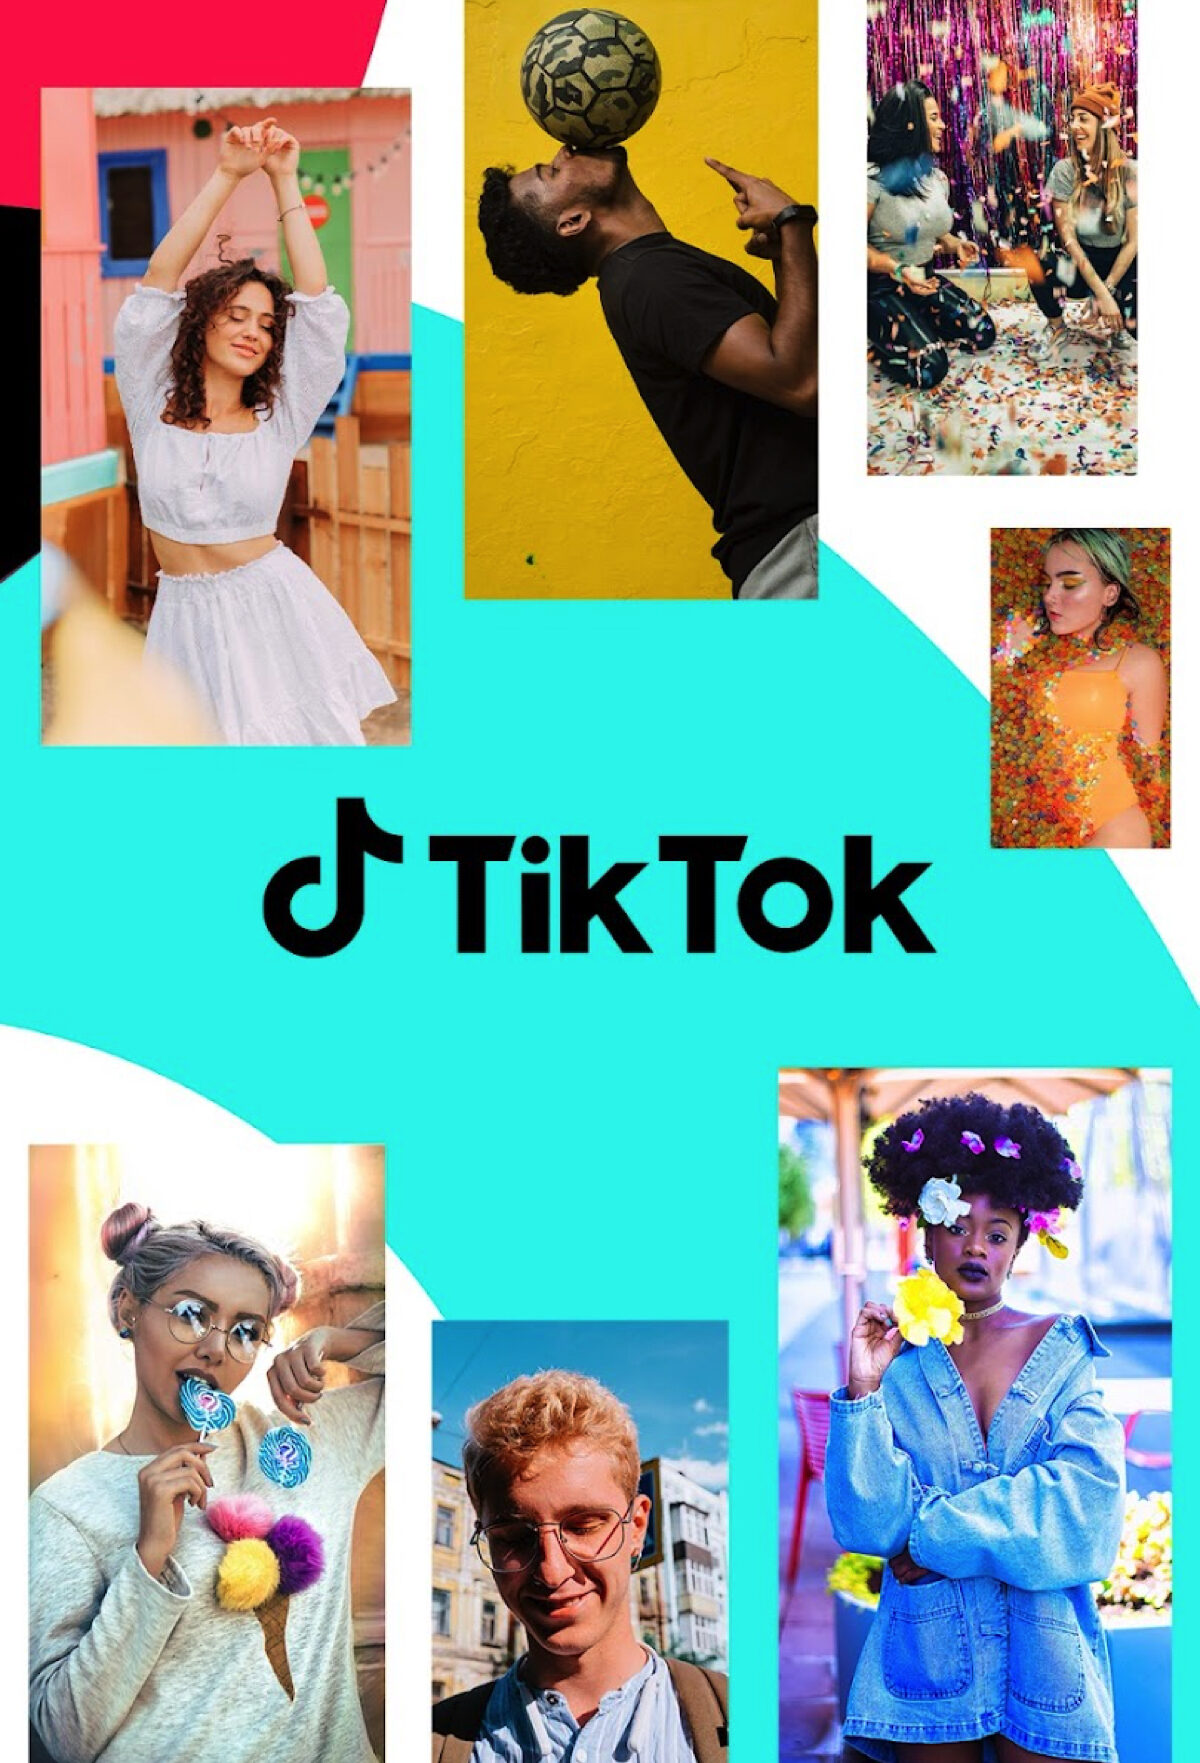 TikTok ora permette di ricevere messaggi da chiunque